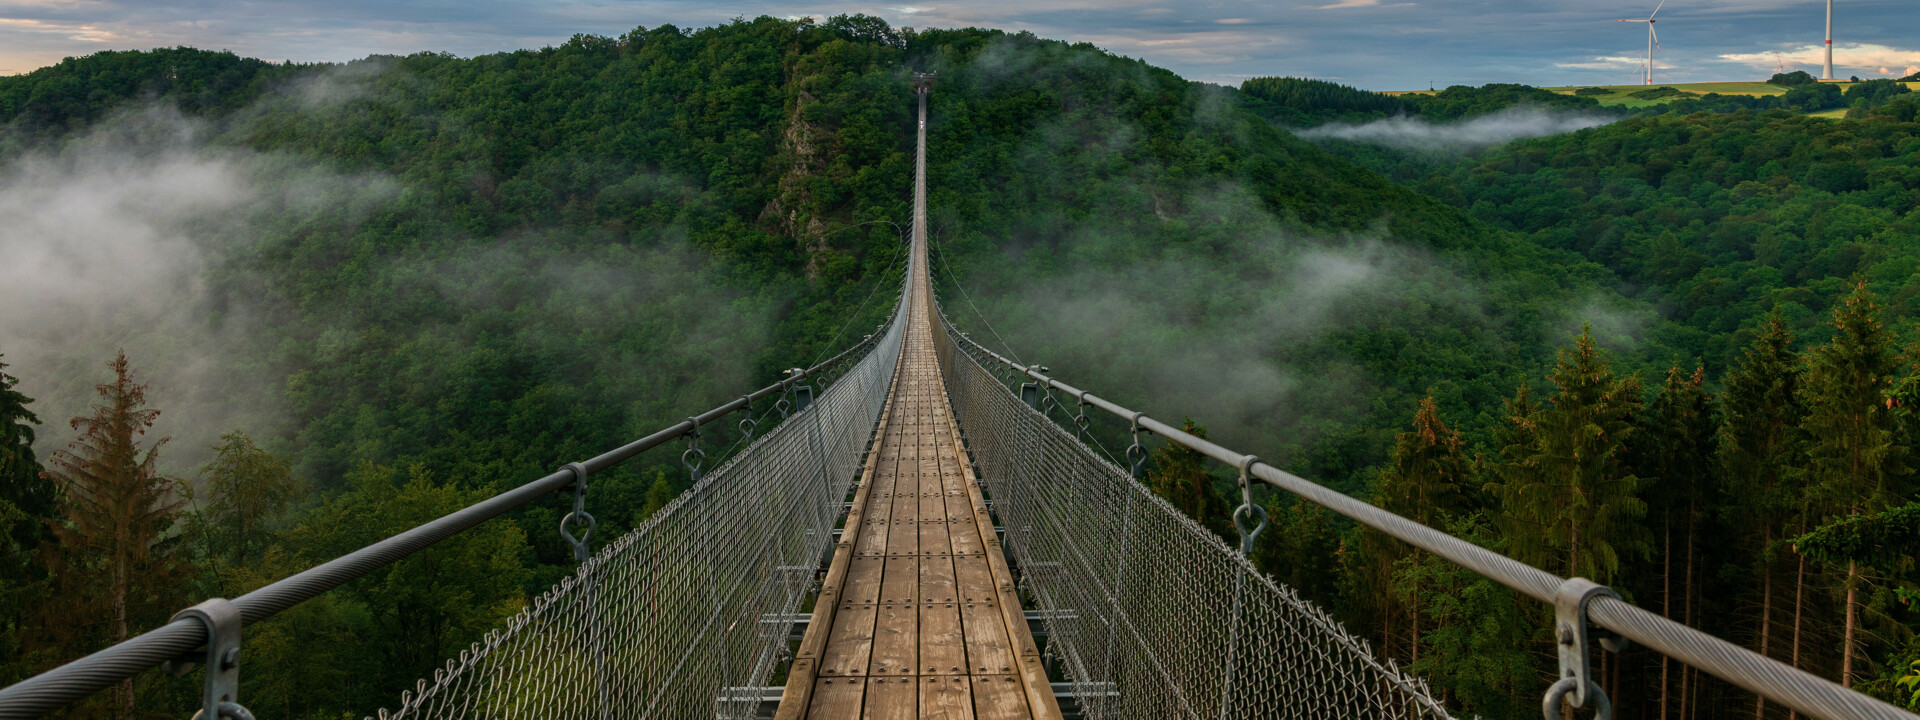 Blick auf eine lange Hängeseilbrücke, die sich über ein tiefes bewaldetes Tal erhebt, im Hintergrund bewölkter Himmel und Nebelschwaden im Tal  ©Bernhard - stock.adobe.com